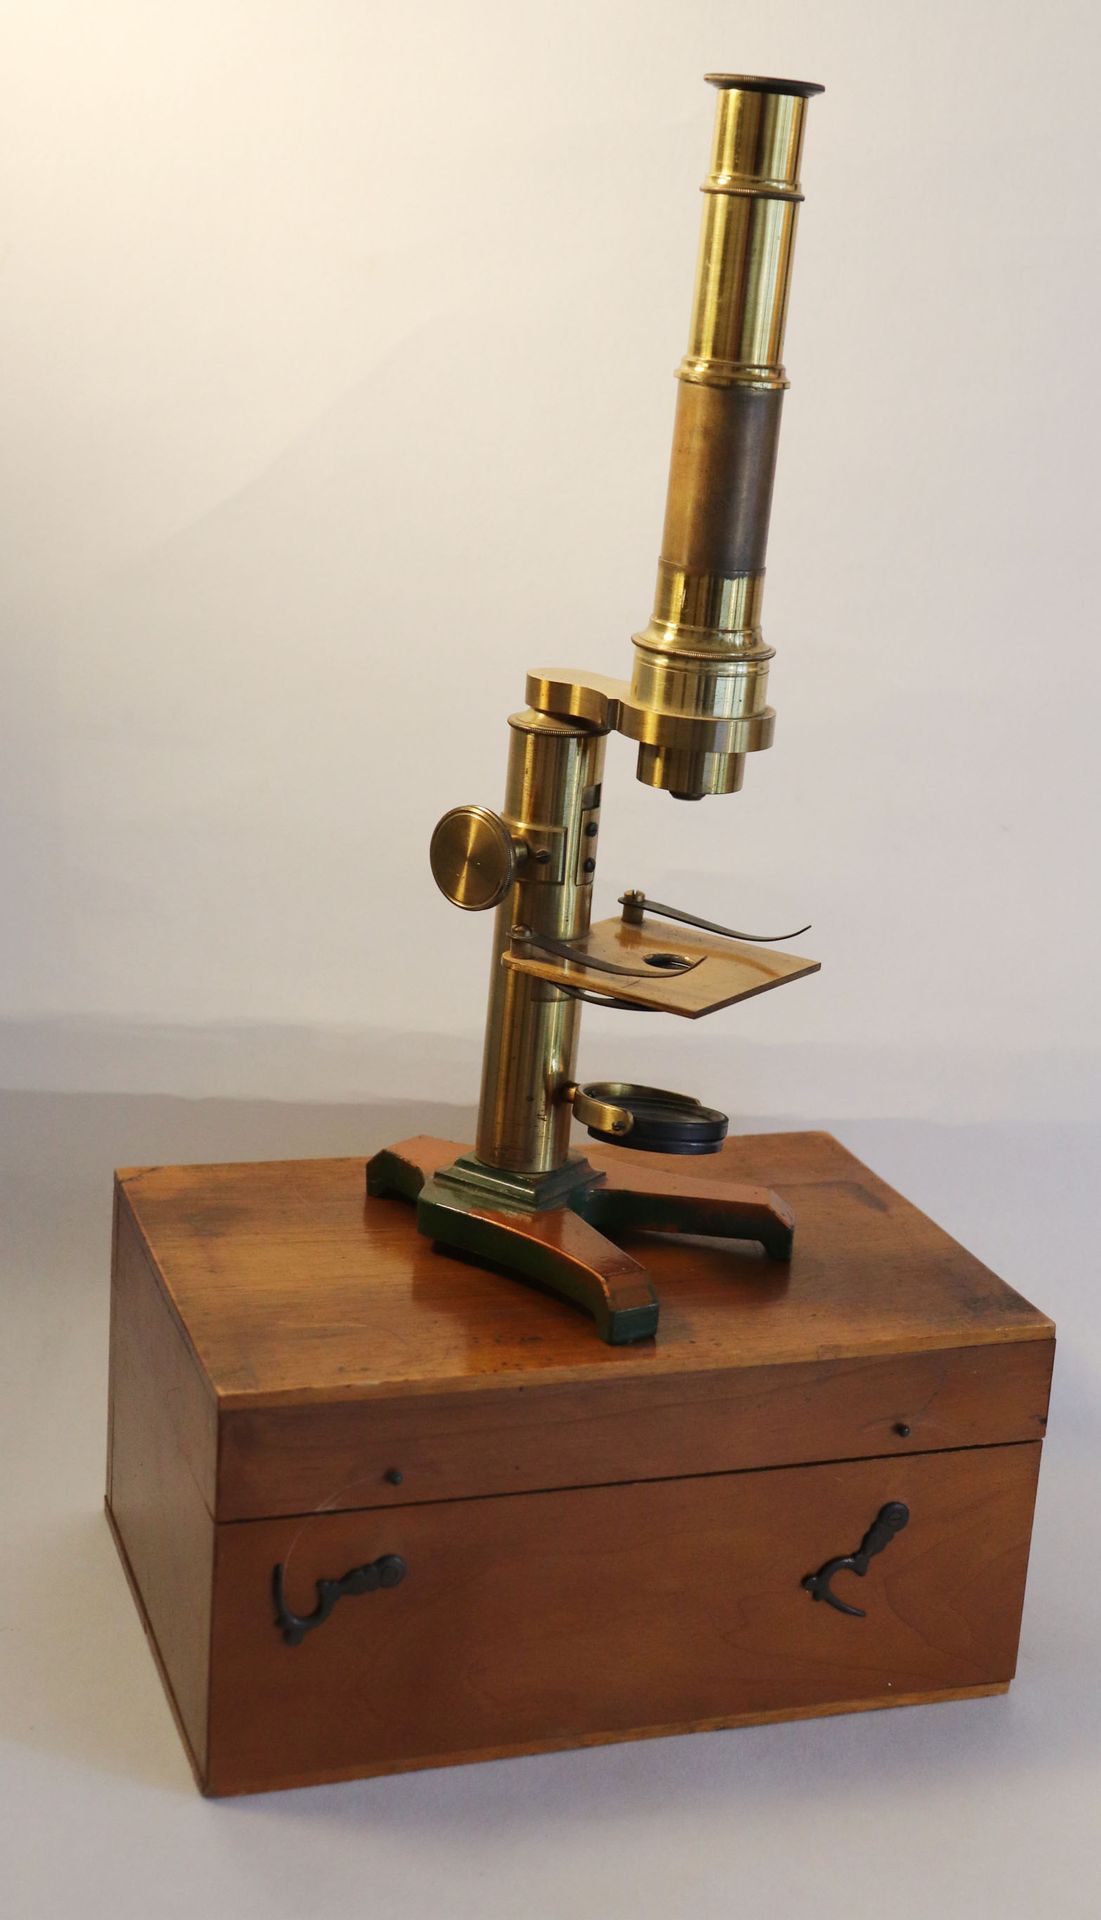 Null 装在木箱中的古铜色显微镜。附上一个装有样本幻灯片的盒子。